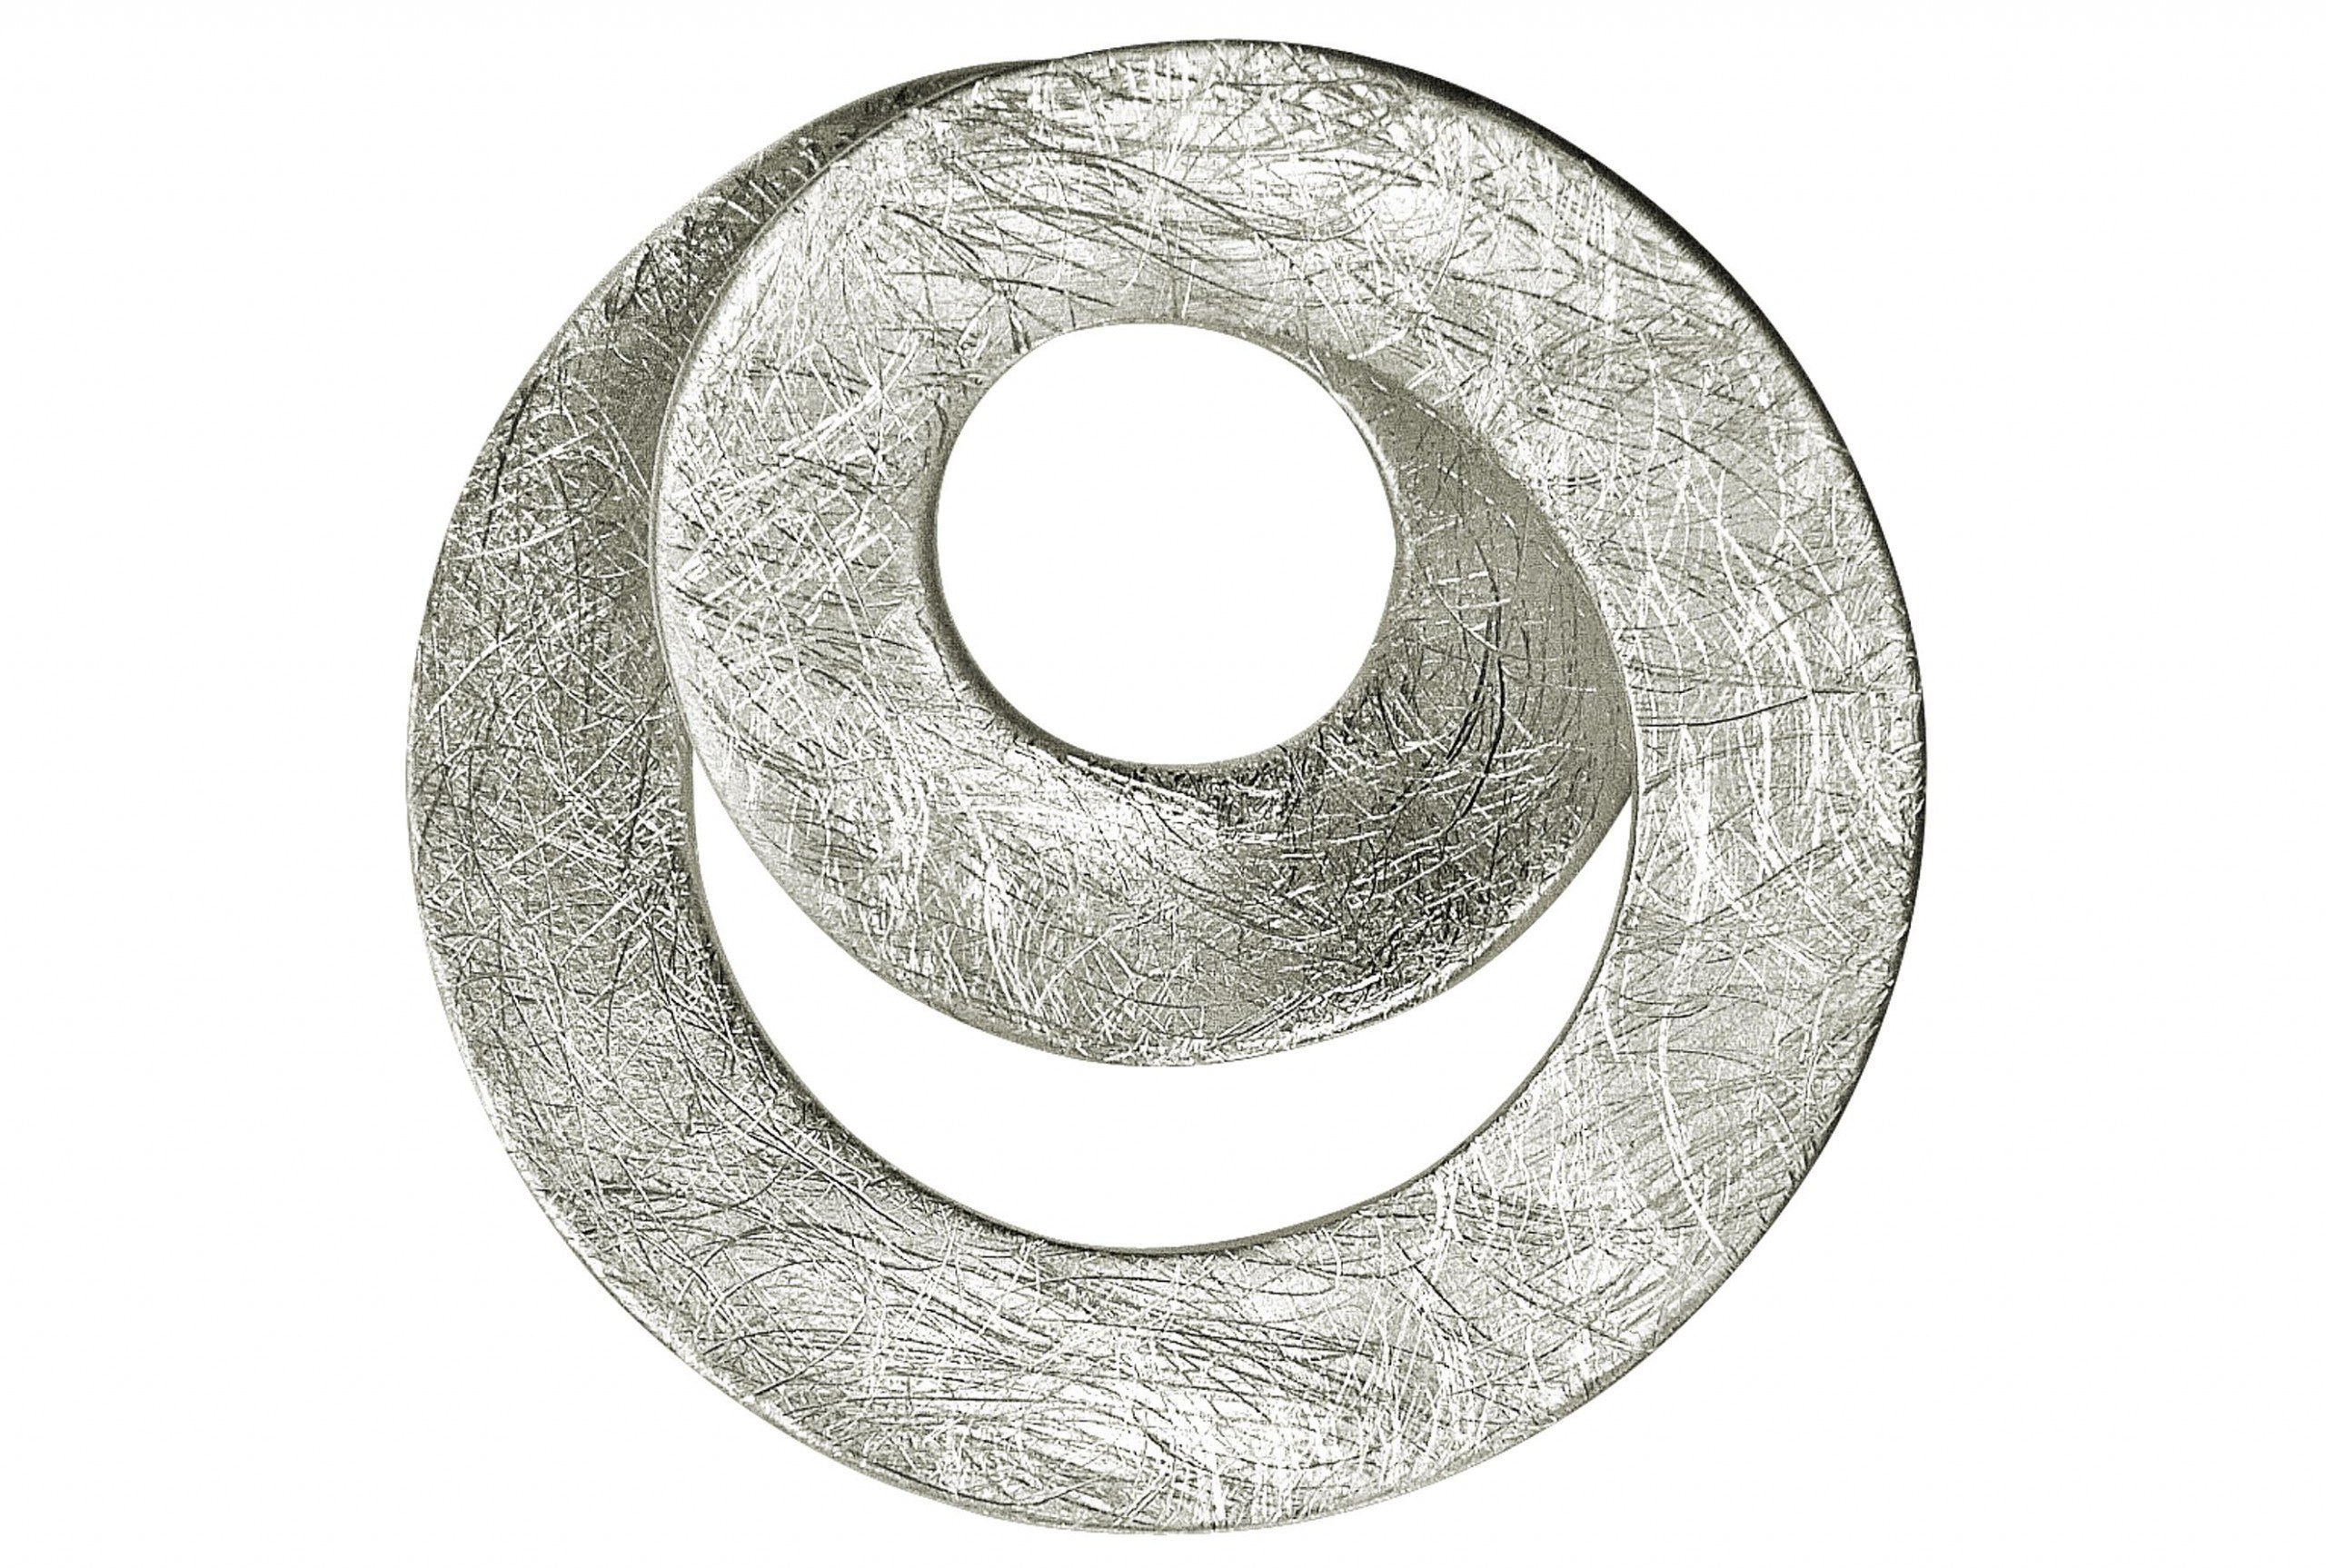 Silberner Kettenanhänger in Loopdesign mit gebürsteter Oberfläche.